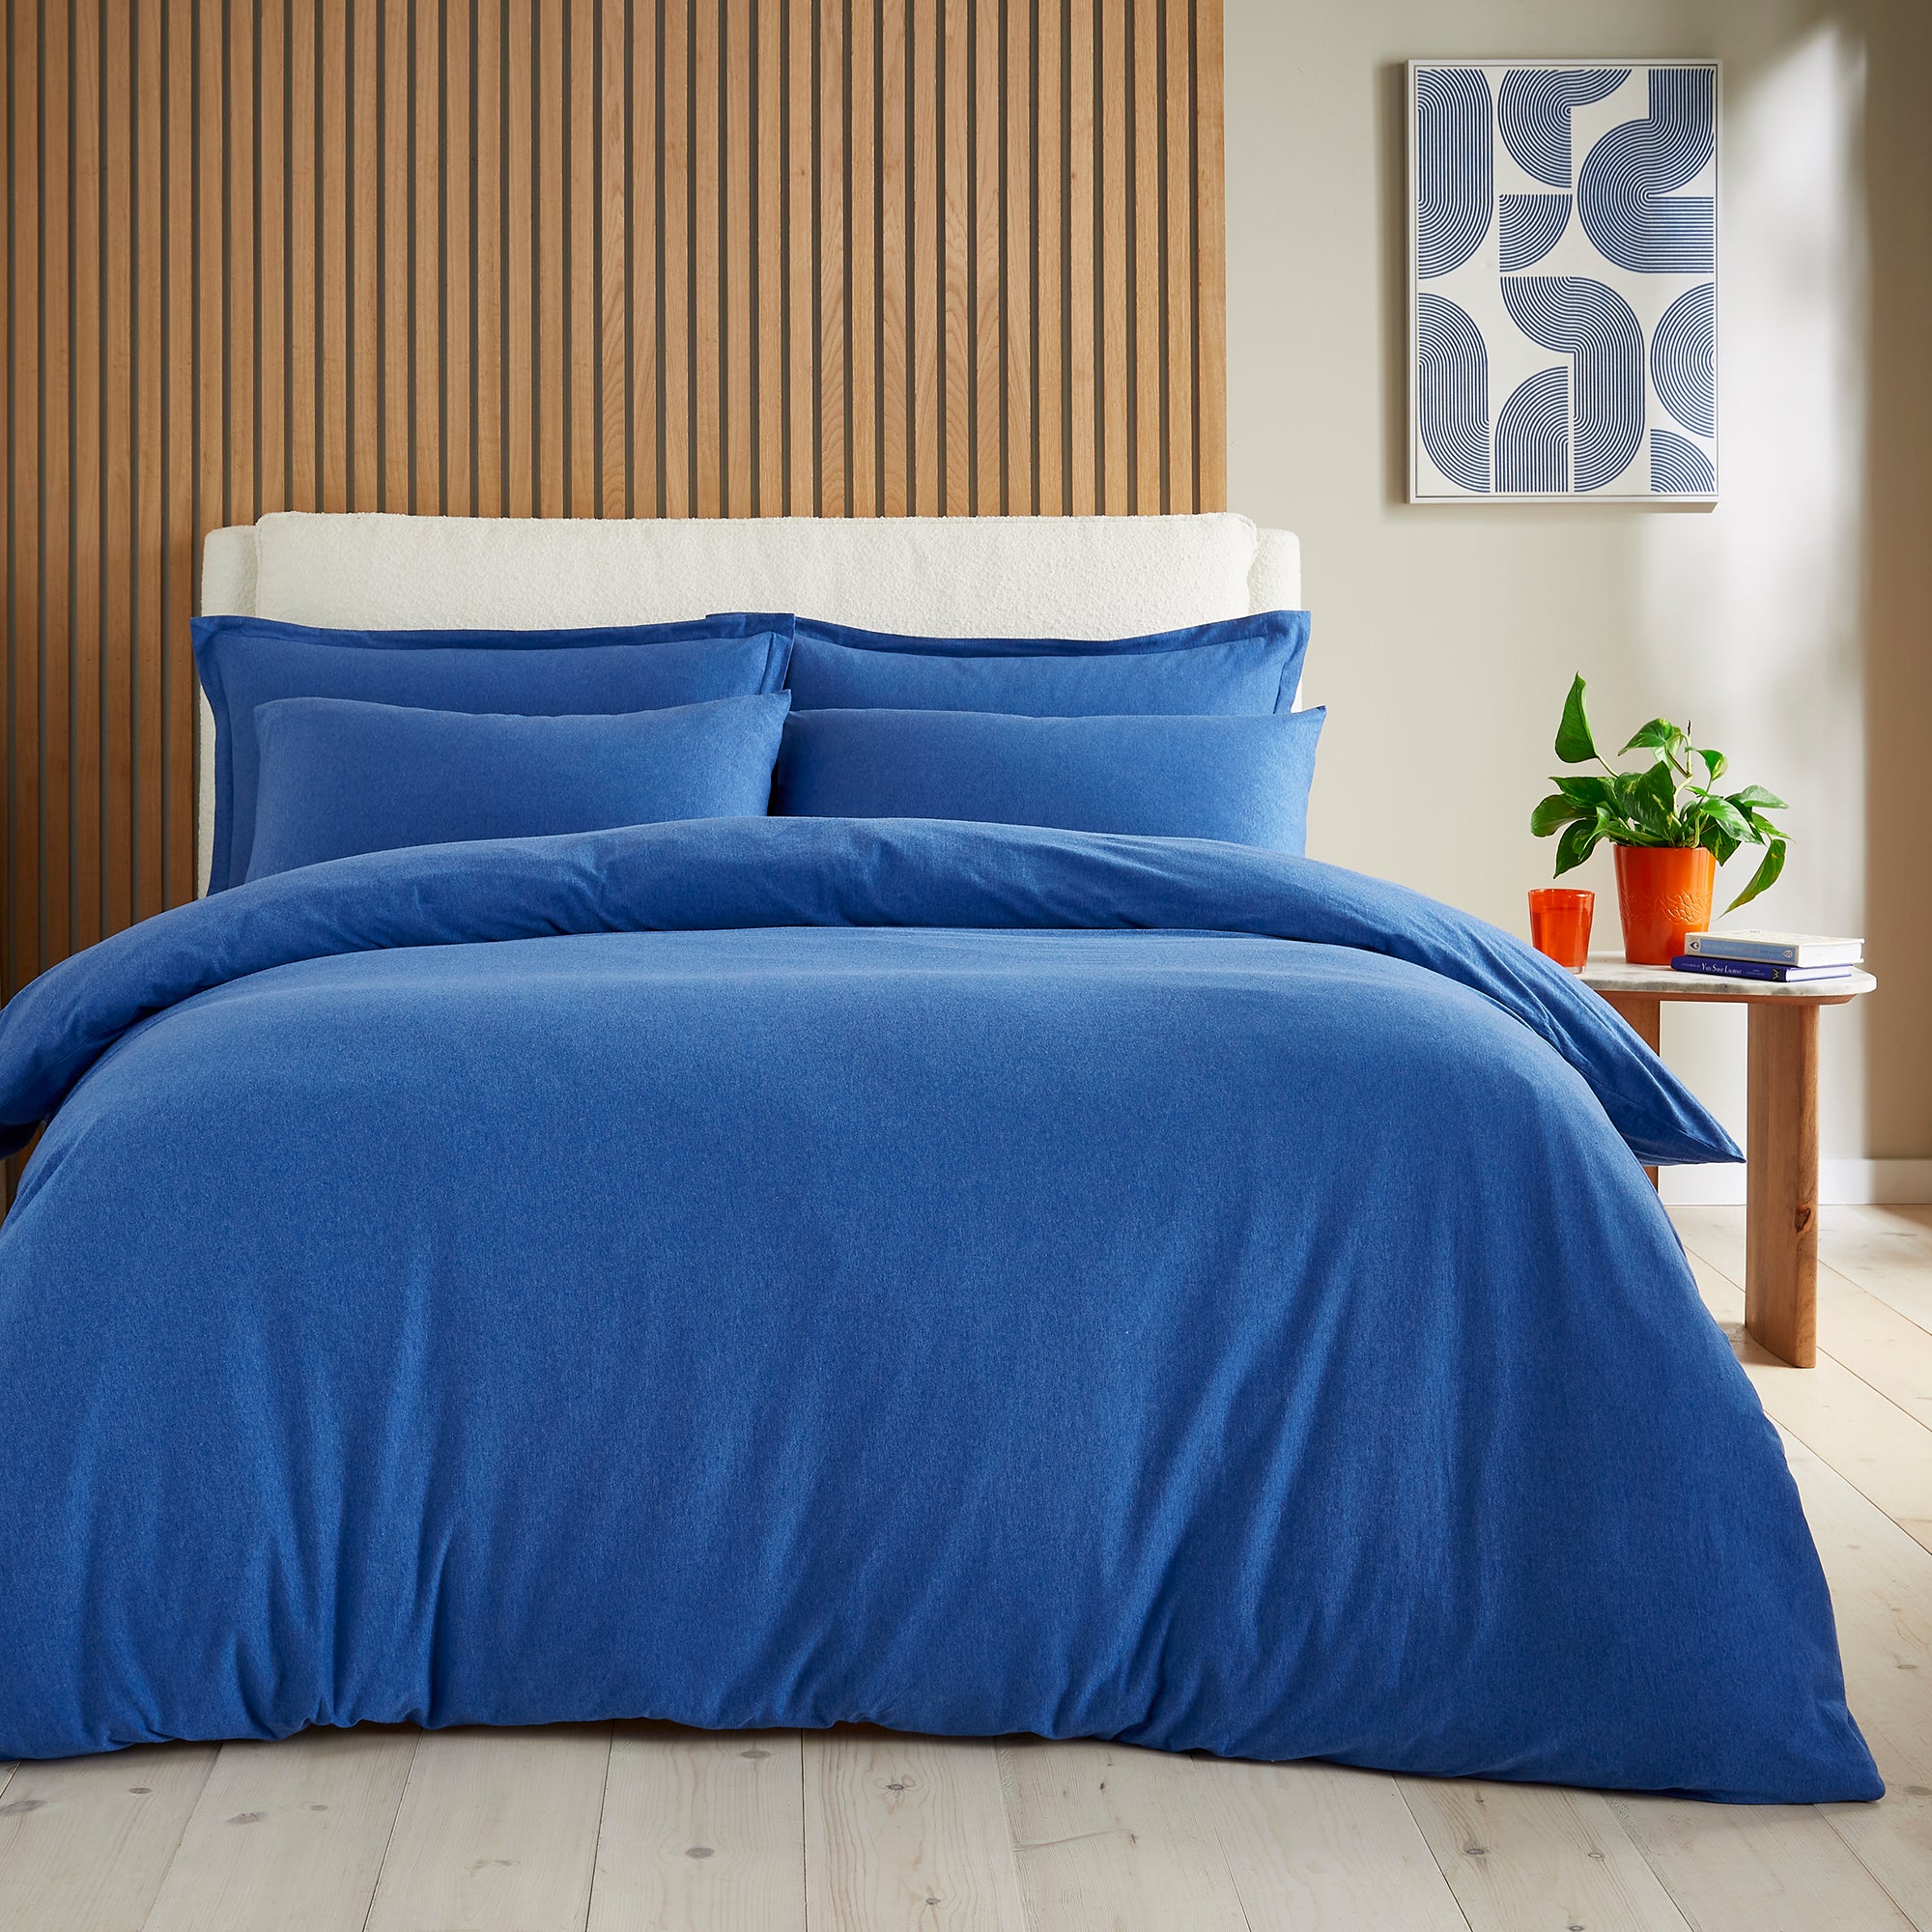 Elements Cotton Jersey Plainduvet Cover Pillowcase Set Classic Blue